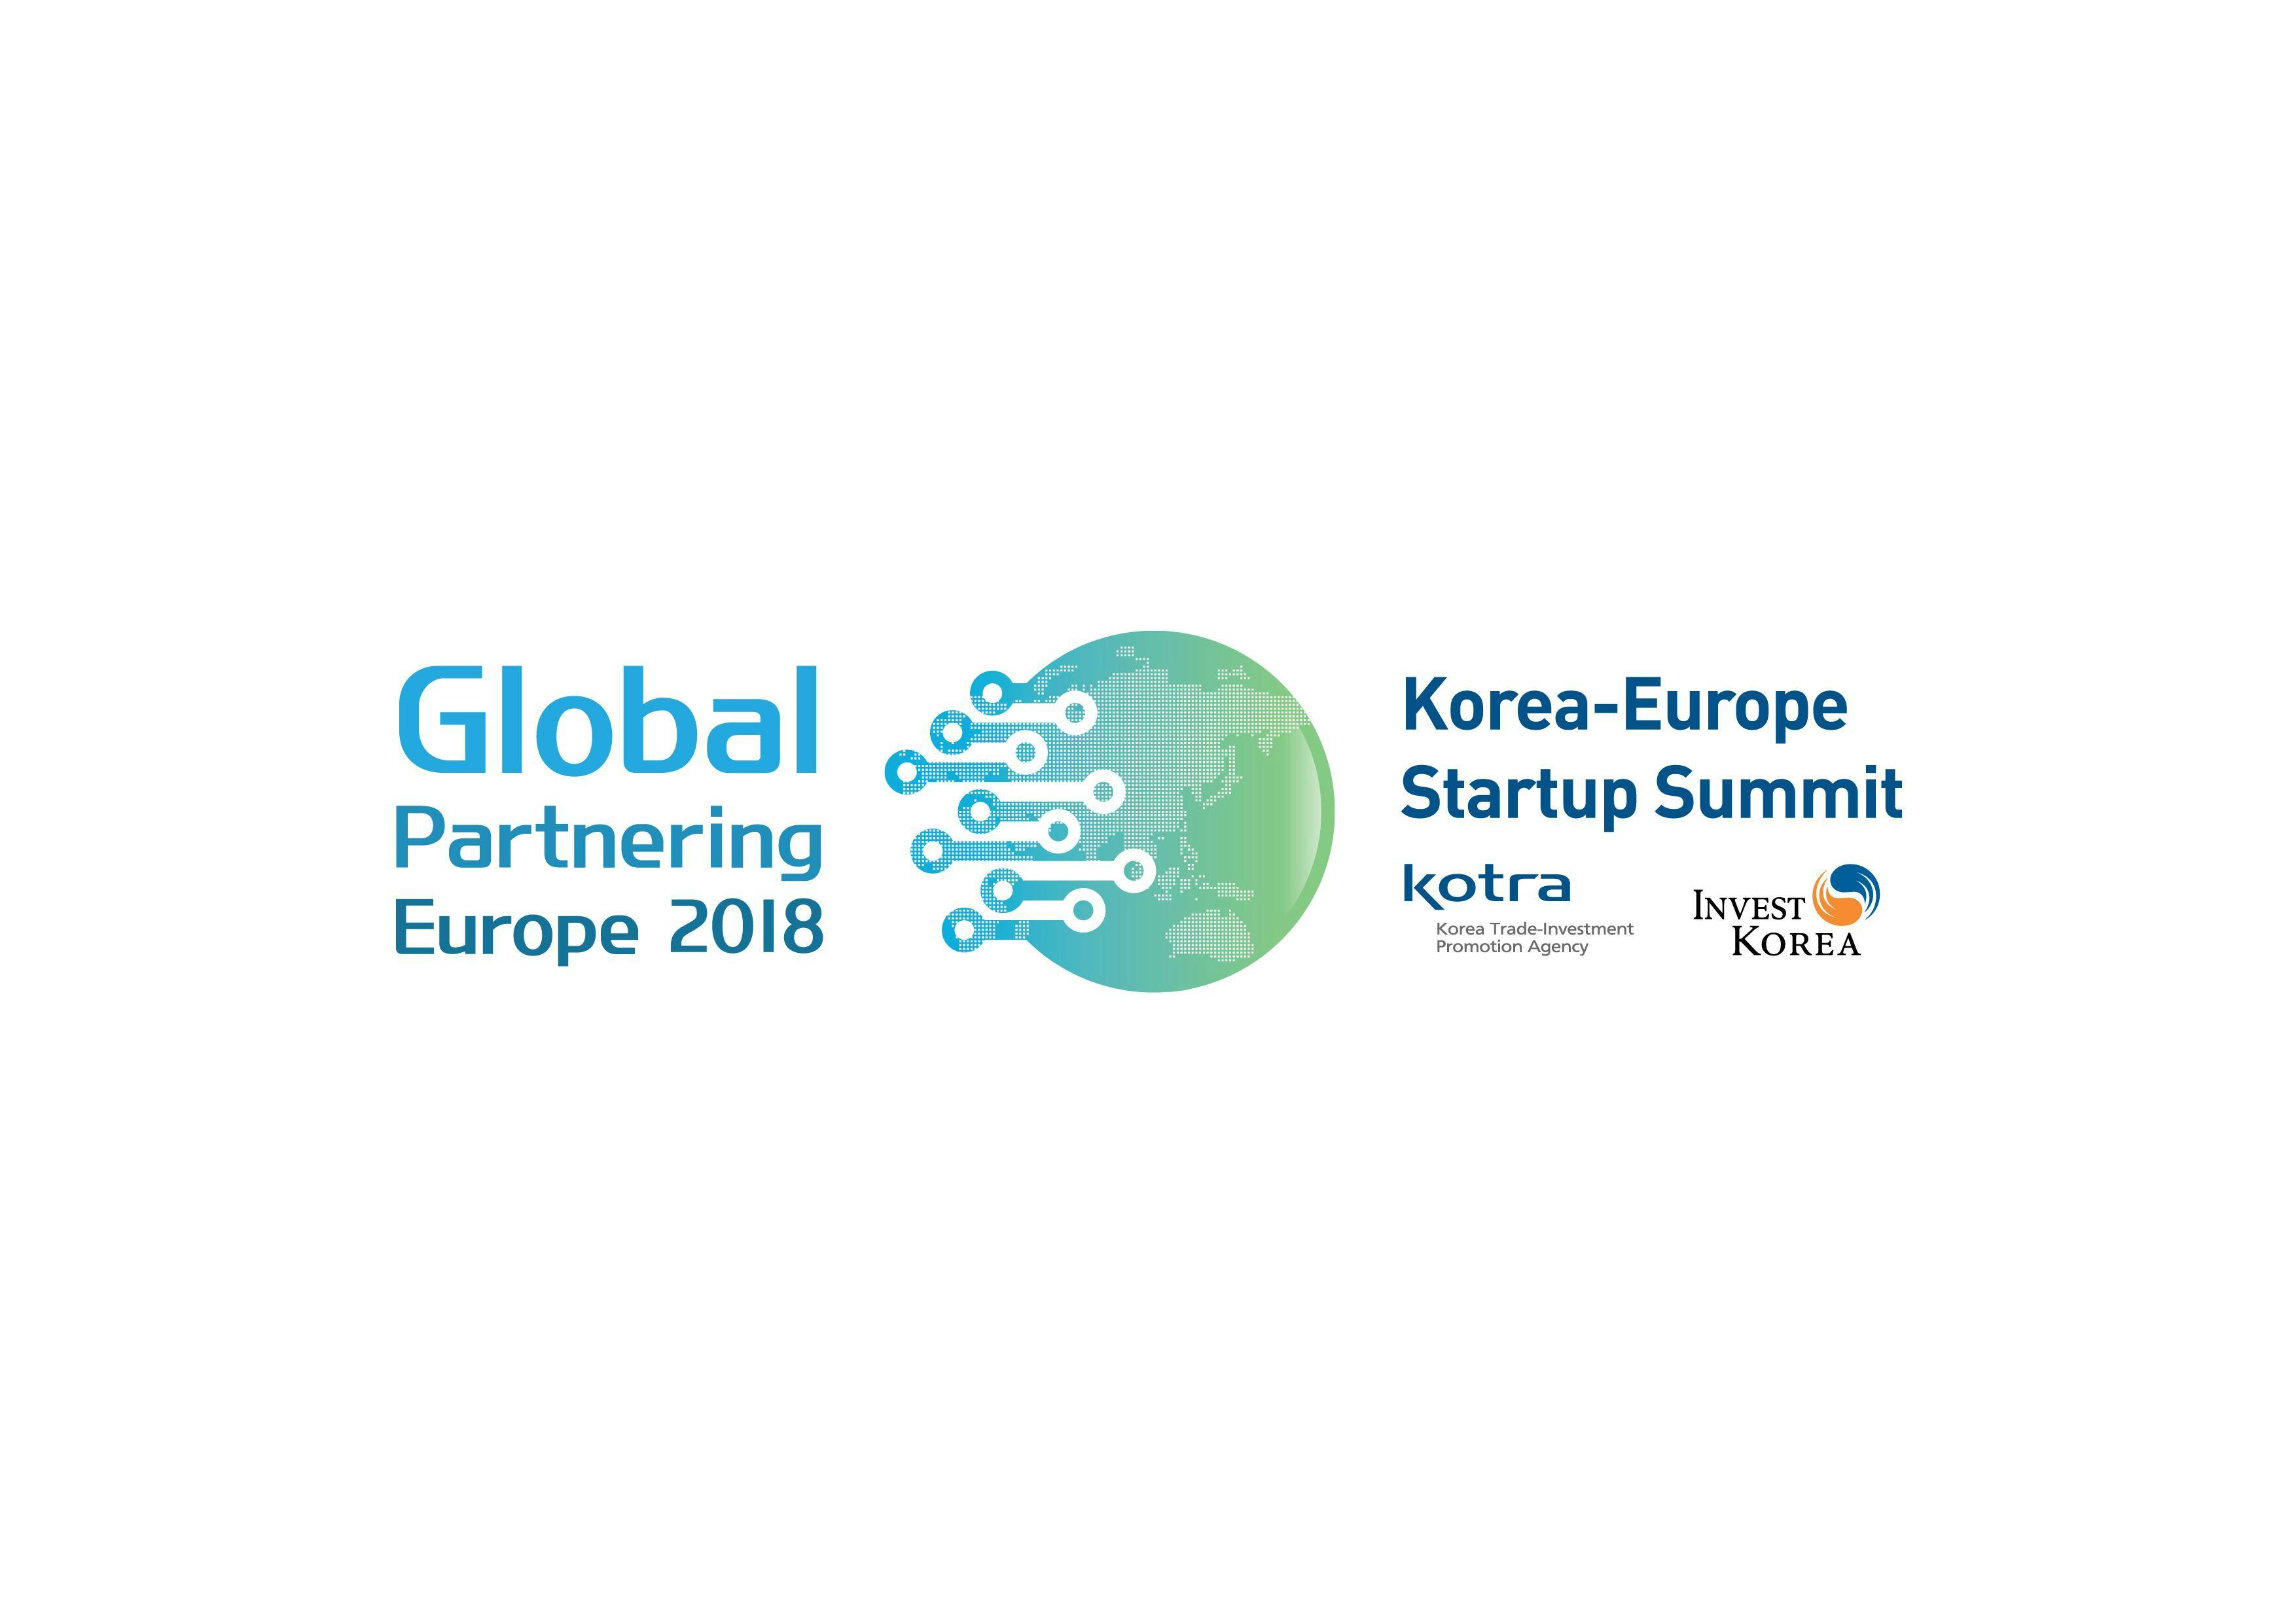 Korea-Europe Start-up Summit